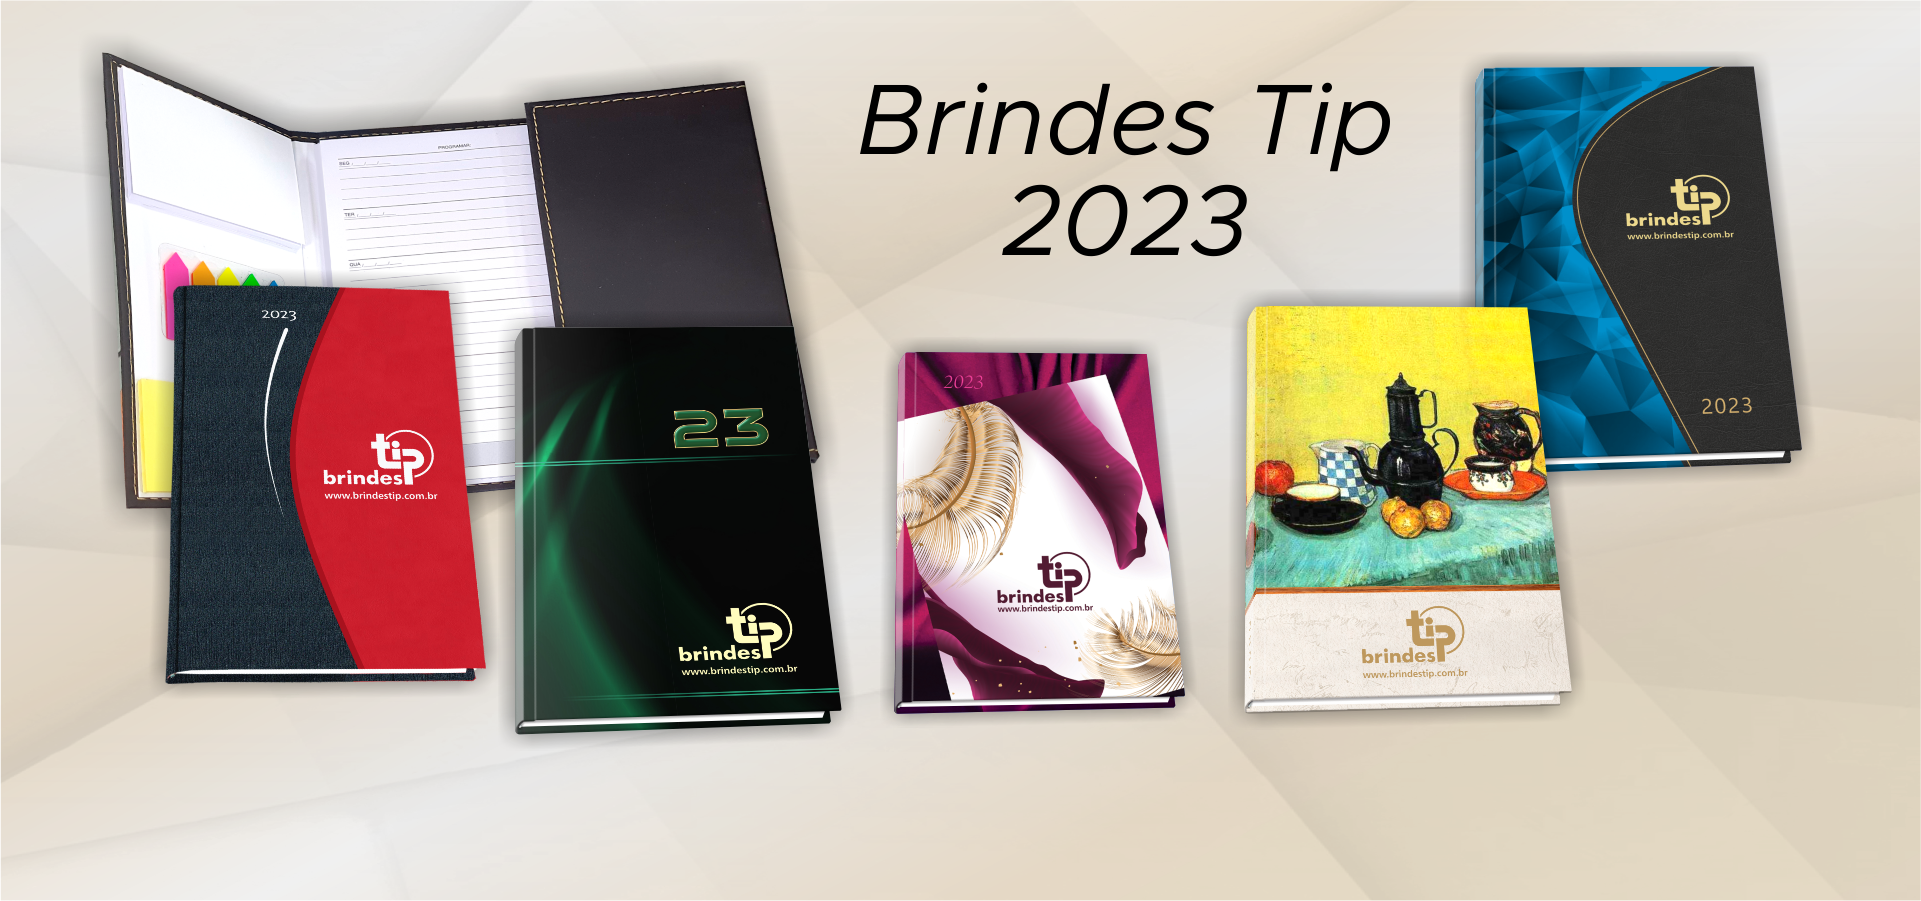 Brindes Tip 2023